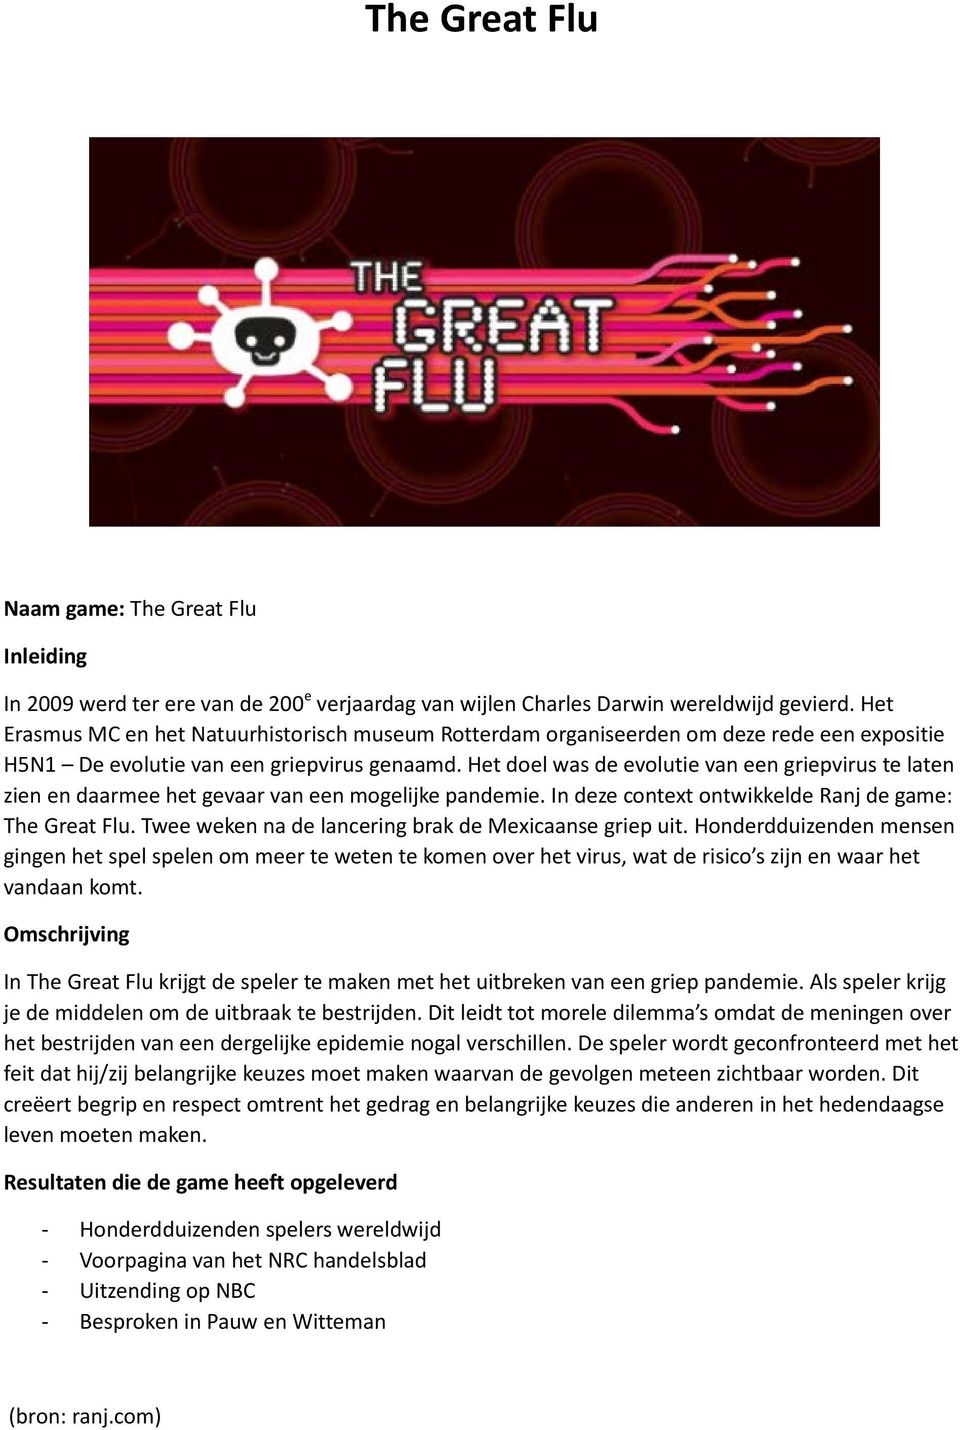 Het doel was de evolutie van een griepvirus te laten zien en daarmee het gevaar van een mogelijke pandemie. In deze context ontwikkelde Ranj de game: The Great Flu.